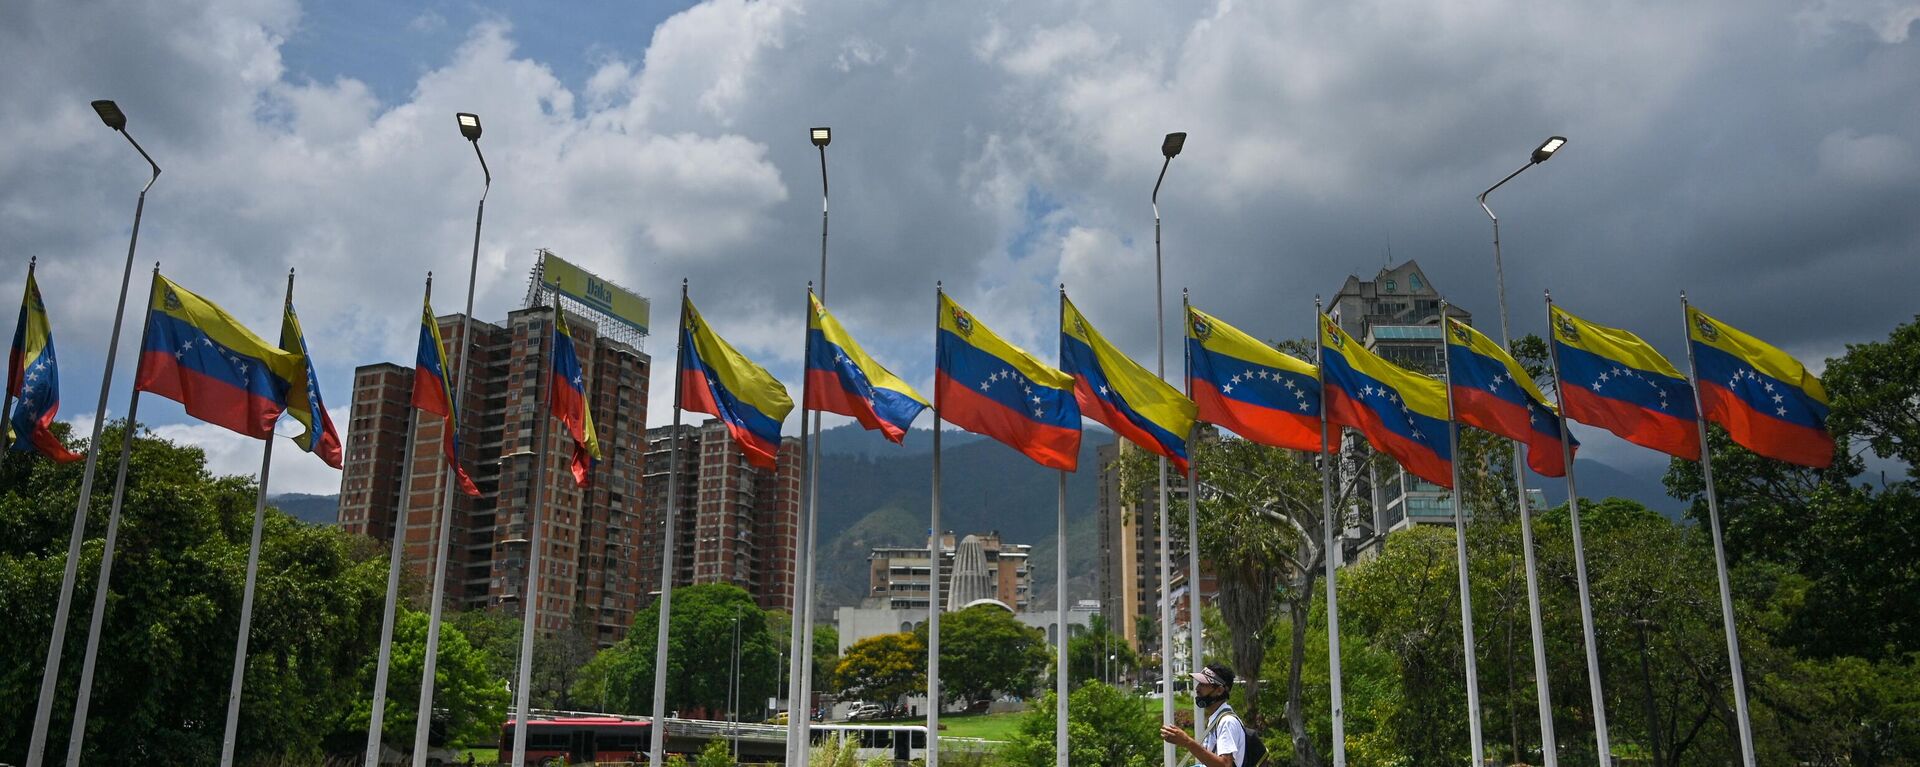 Pessoa passa ao lado de uma série de bandeiras venezuelanas em uma rodovia em Caracas, Venezuela, 22 de abril de 2022 - Sputnik Brasil, 1920, 18.12.2022